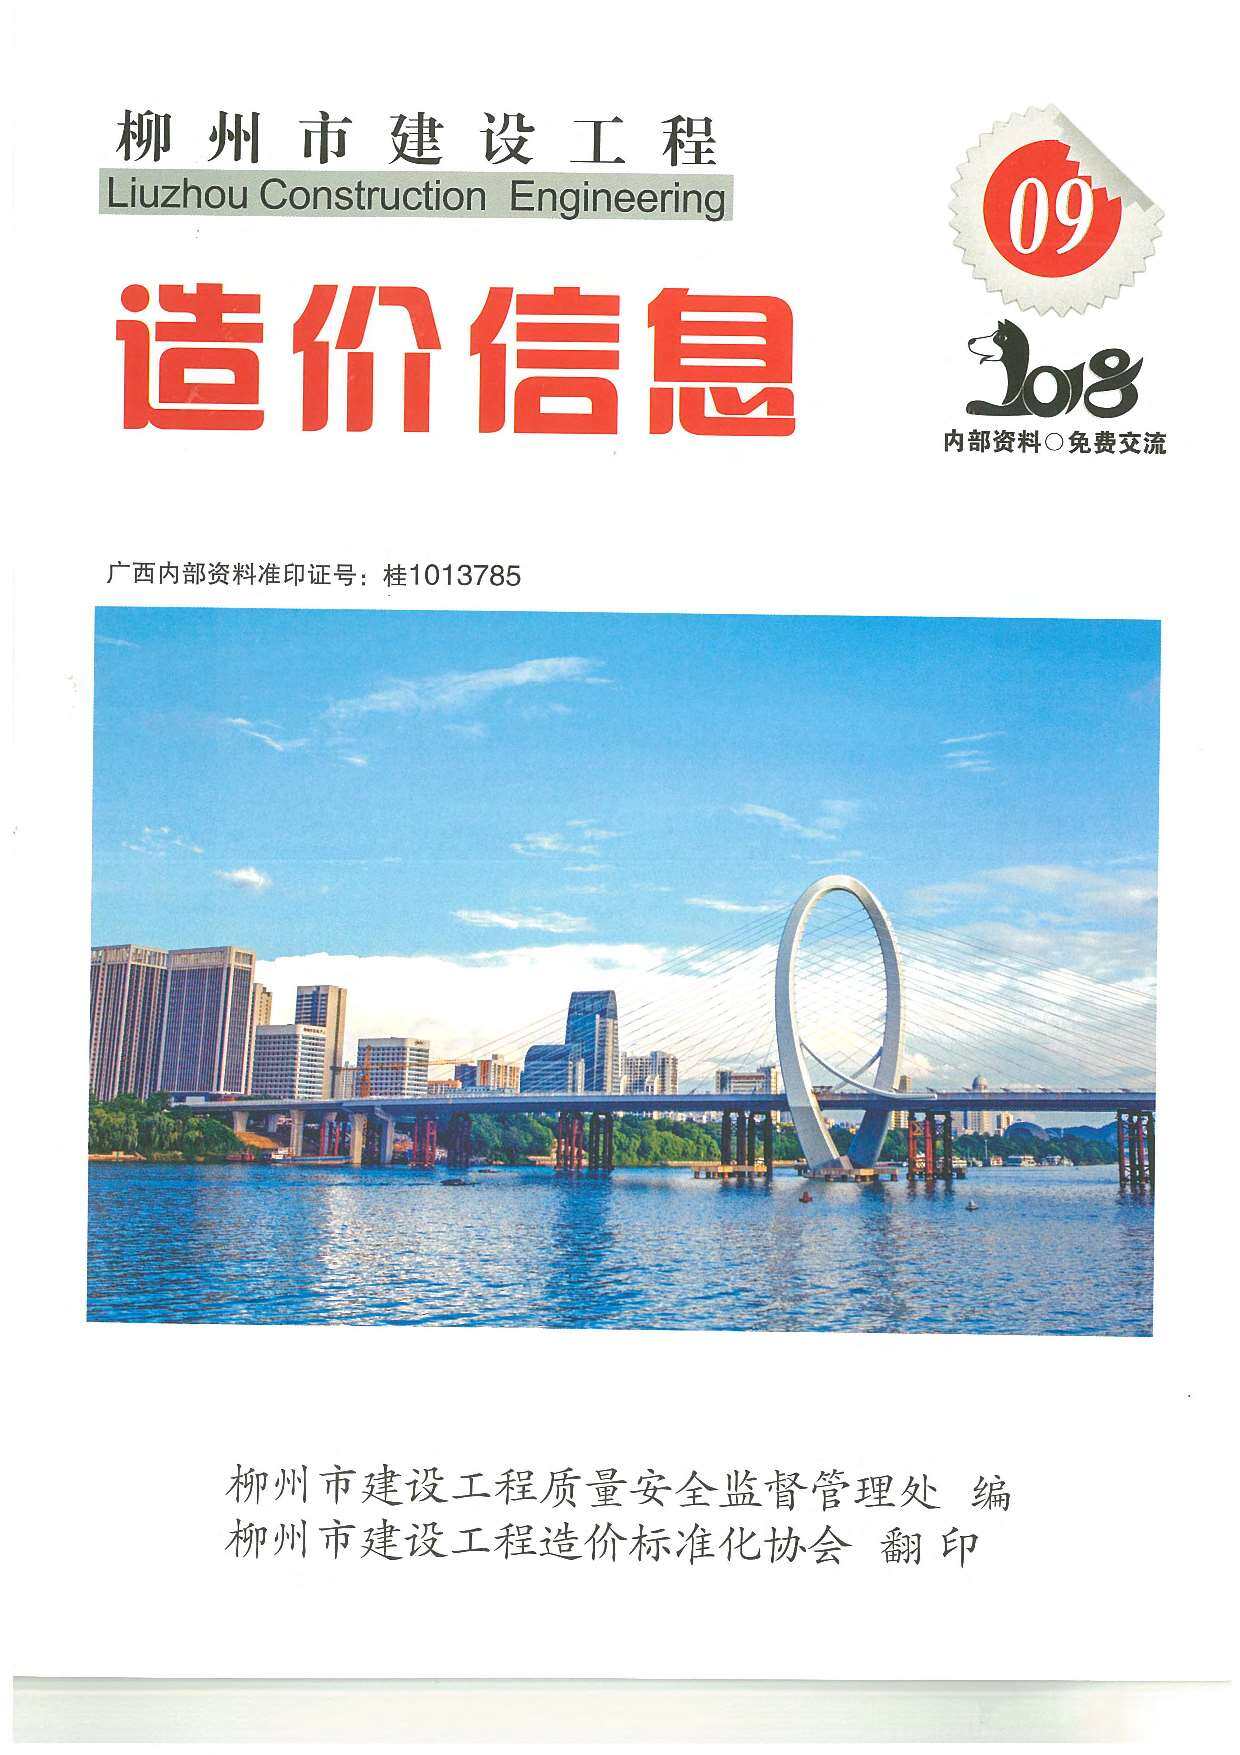 柳州市2018年9月工程造价信息期刊